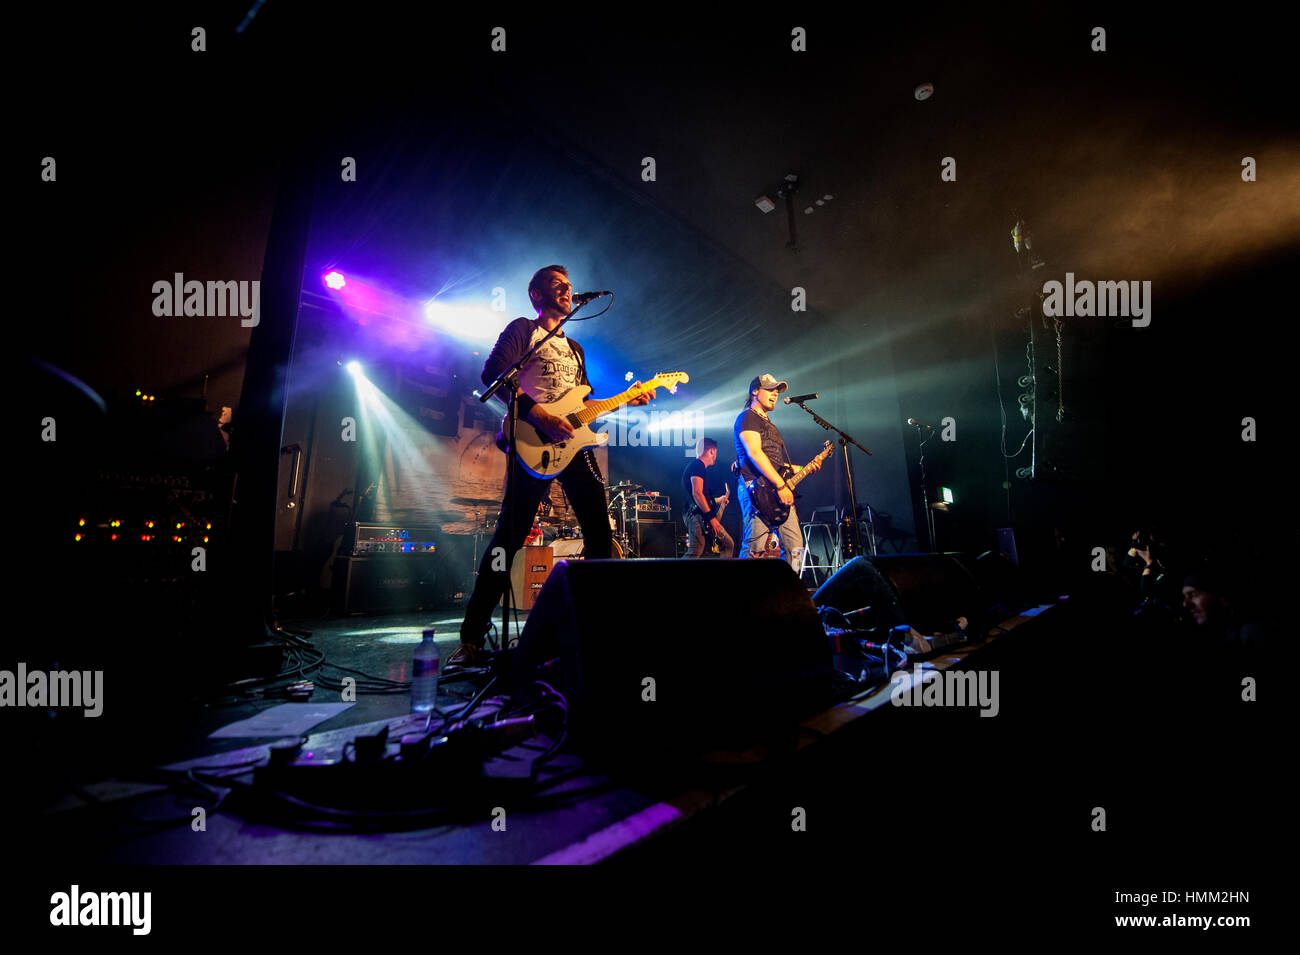 Rock Band realice en Birminghams roto de piedra O2 Academy. El guitarrista Chris Davis desempeña una guitarra blanca (centro izquierda). Foto de stock